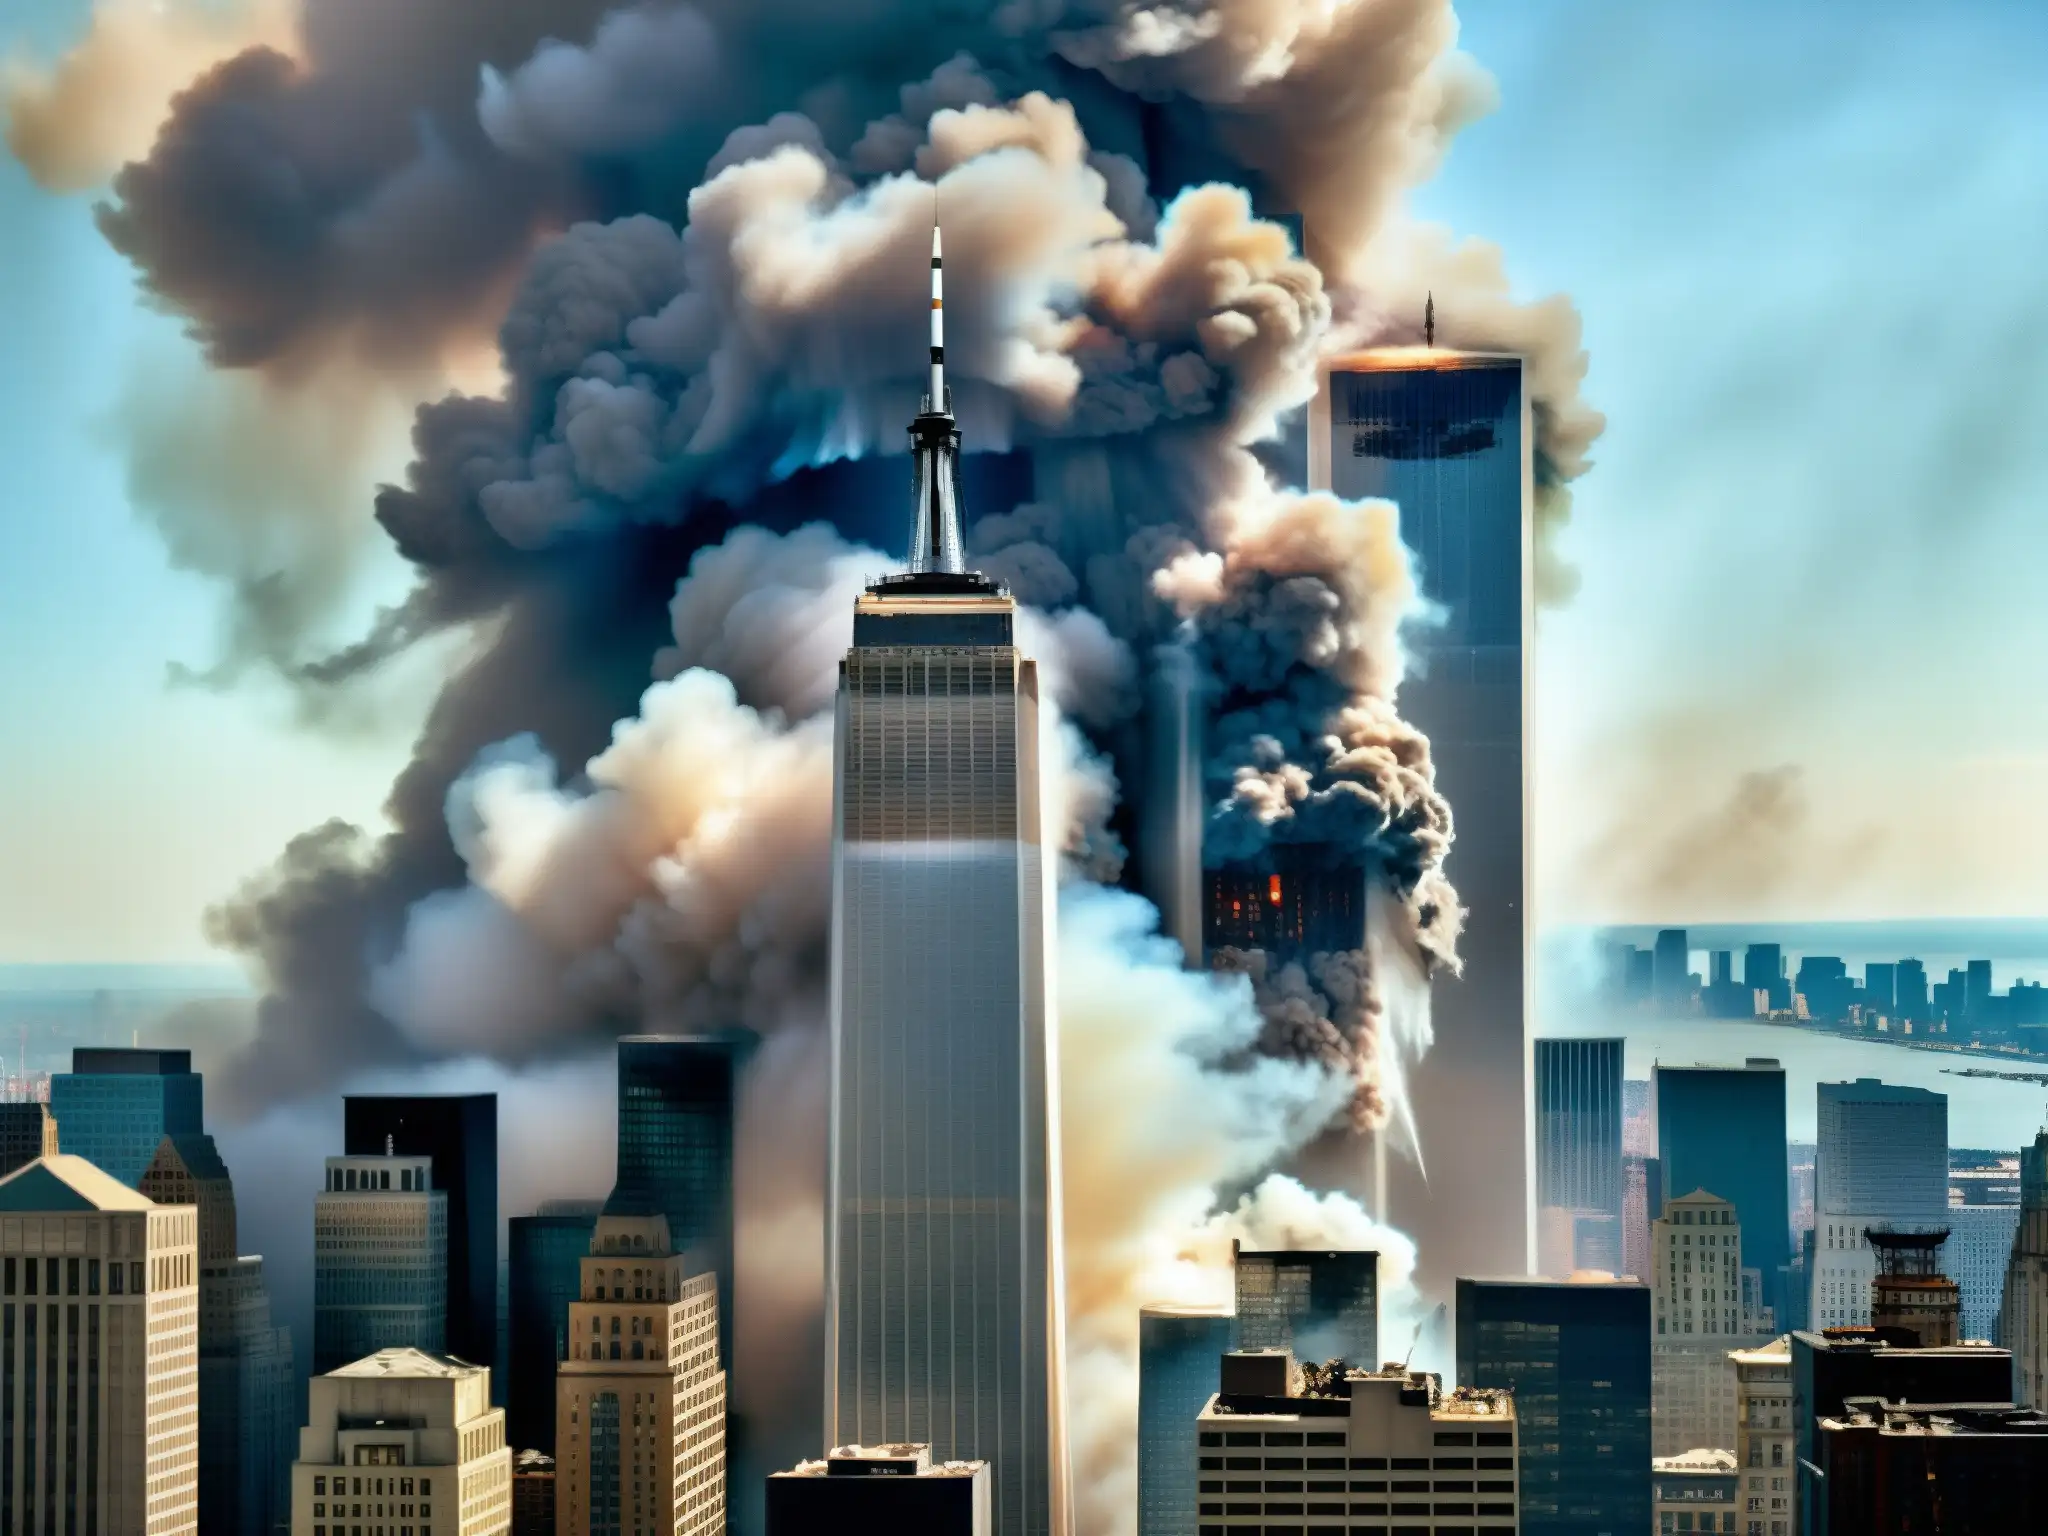 Escena caótica en las Torres Gemelas: demolición controlada y caos en el World Trade Center después del 9/11